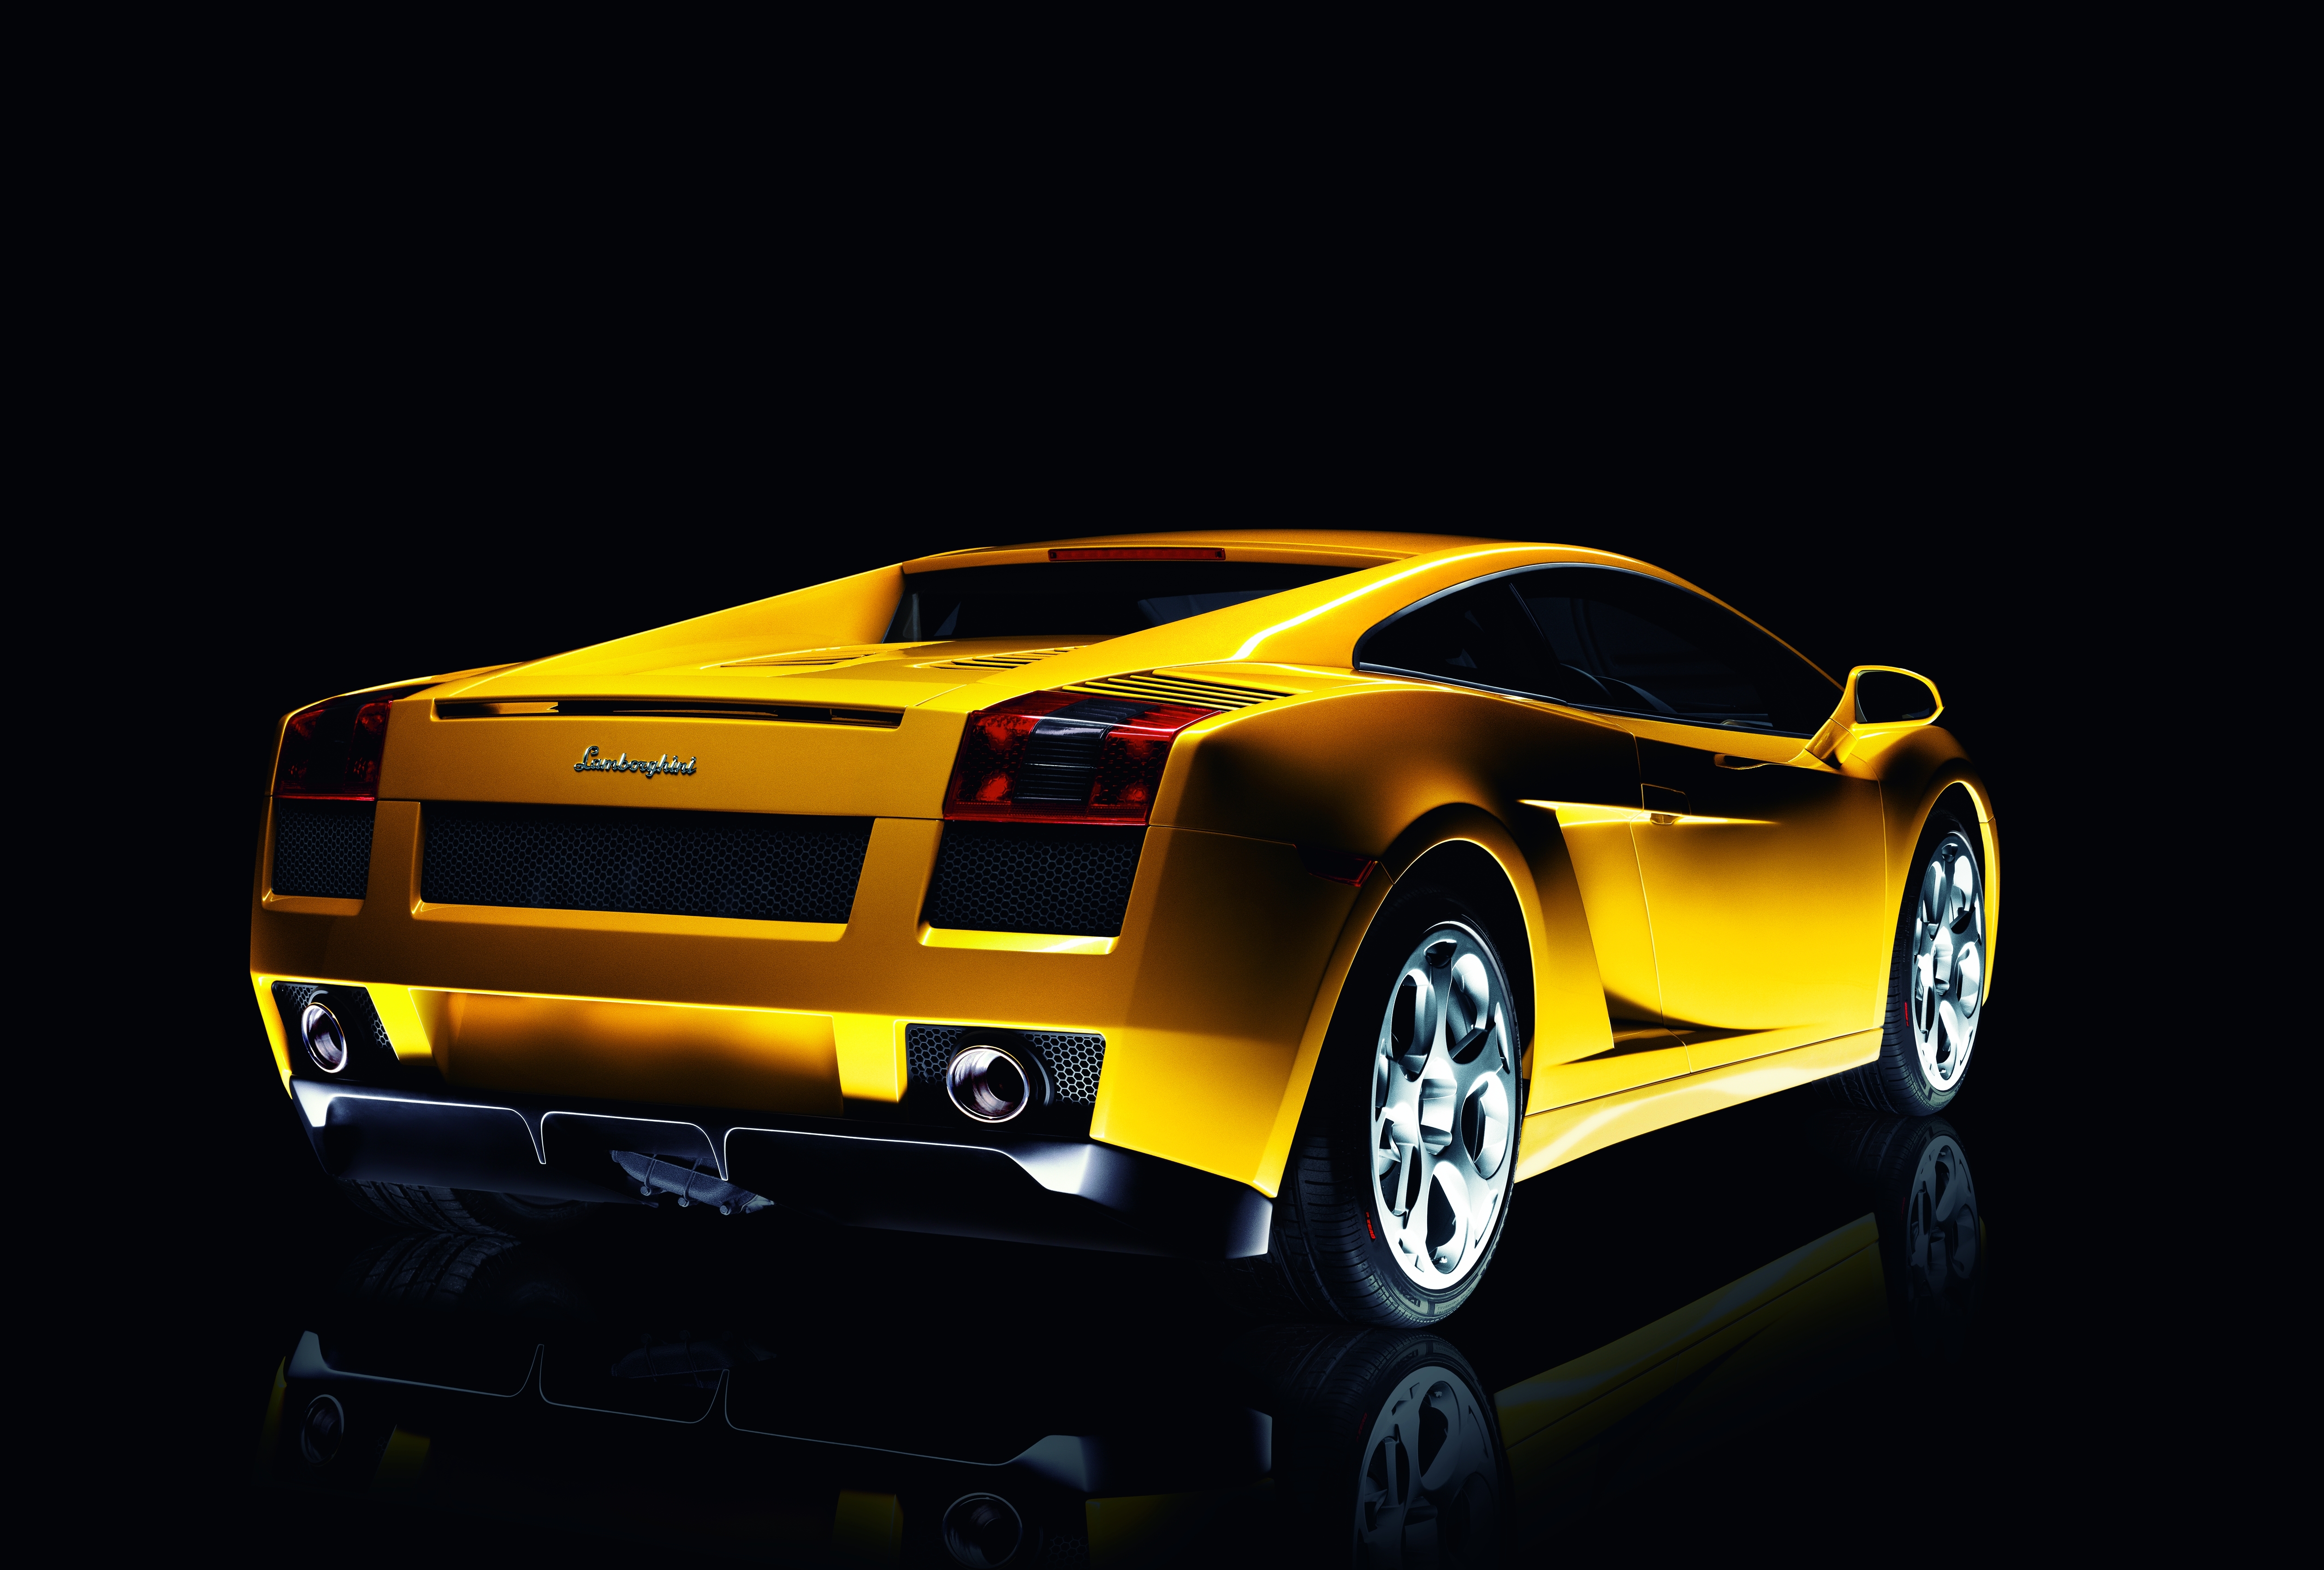 cars, vehicles, Lamborghini Gallardo, rear angle view - desktop wallpaper